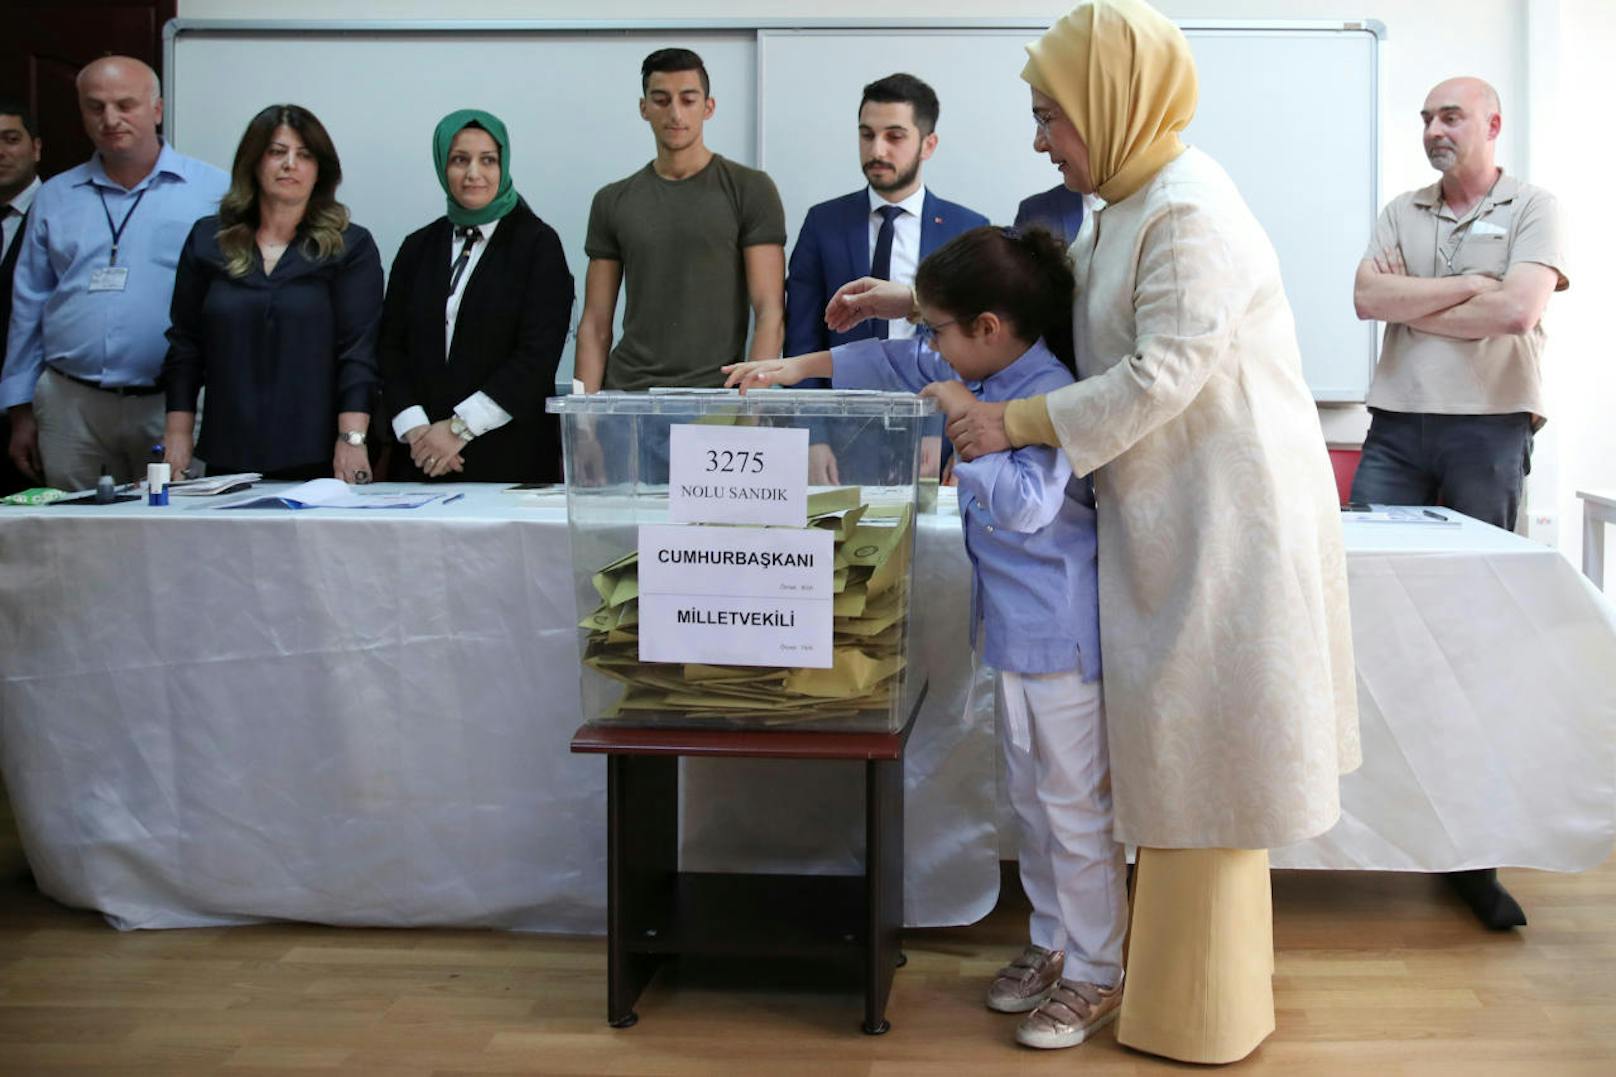 Emine Erdogan mit ihrer Ekelin bei der Stimmabgabe in Istanbul.